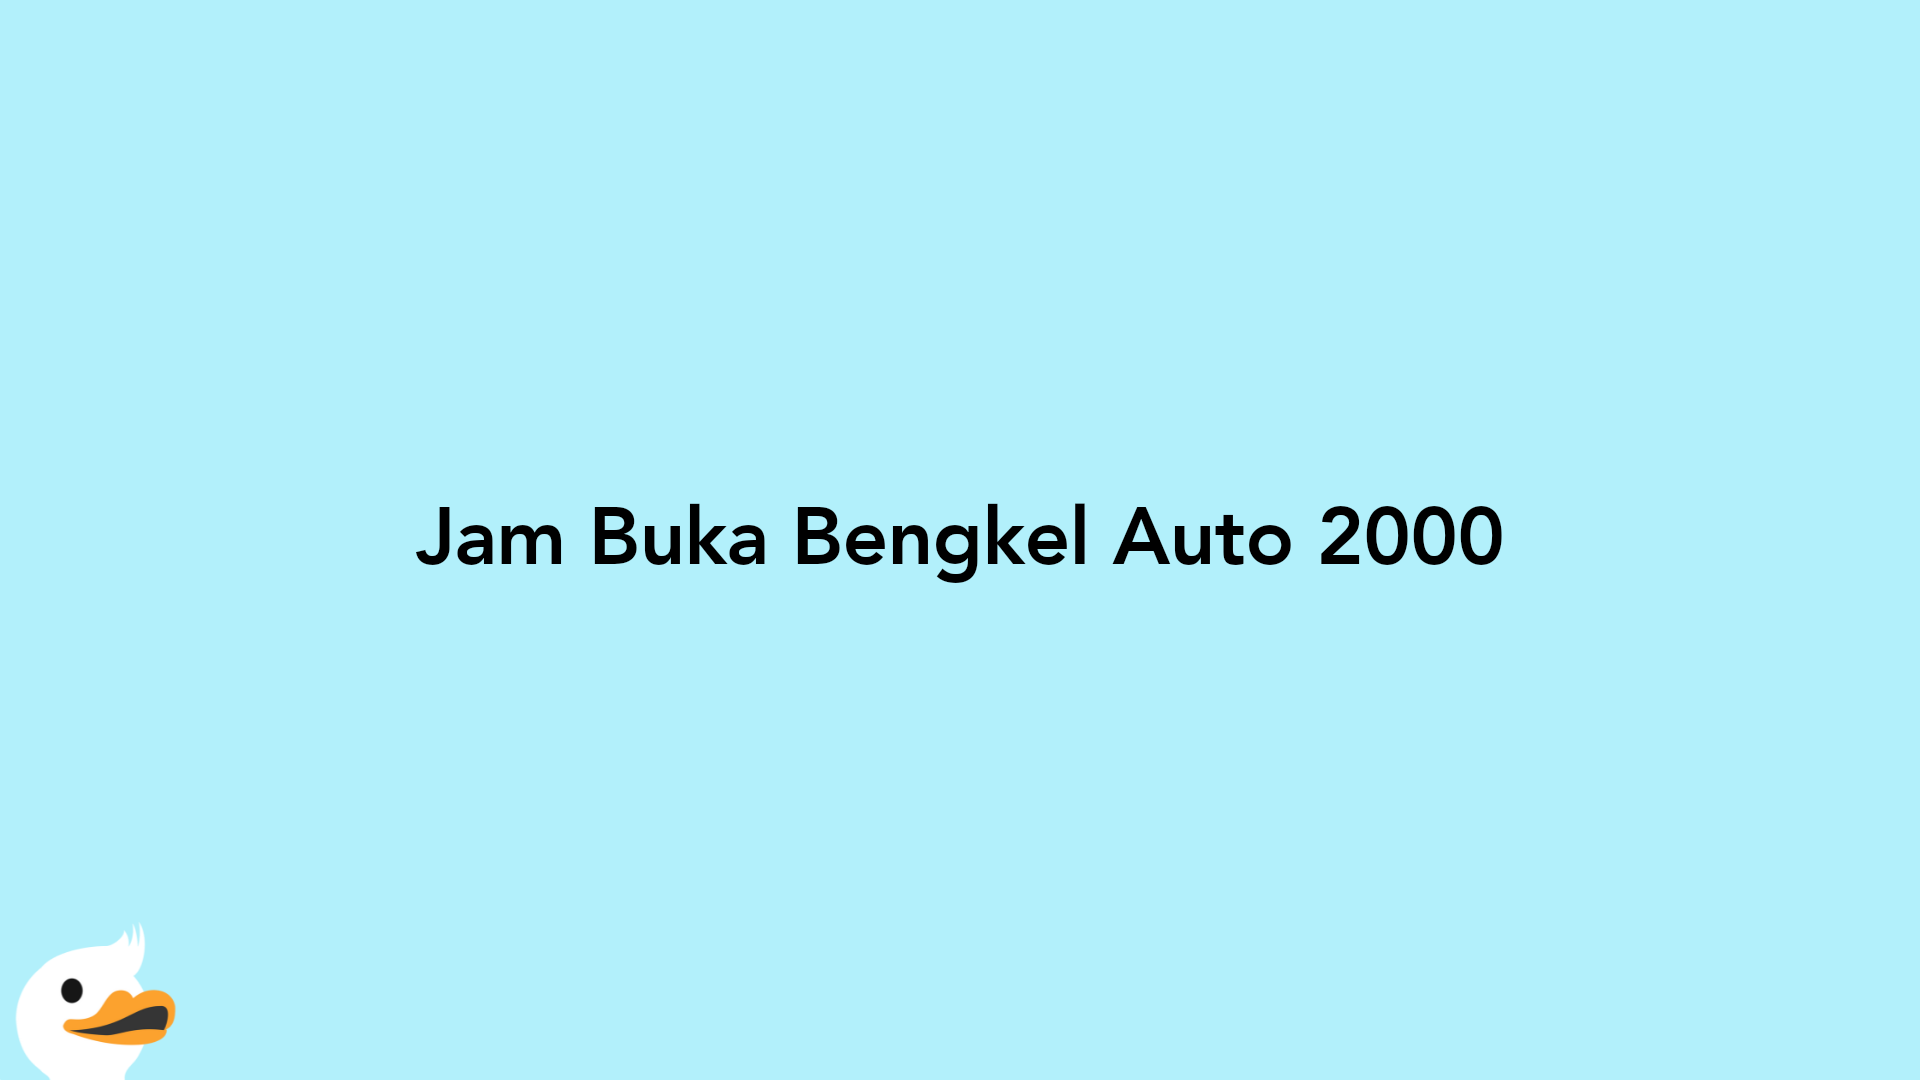 Jam Buka Bengkel Auto 2000